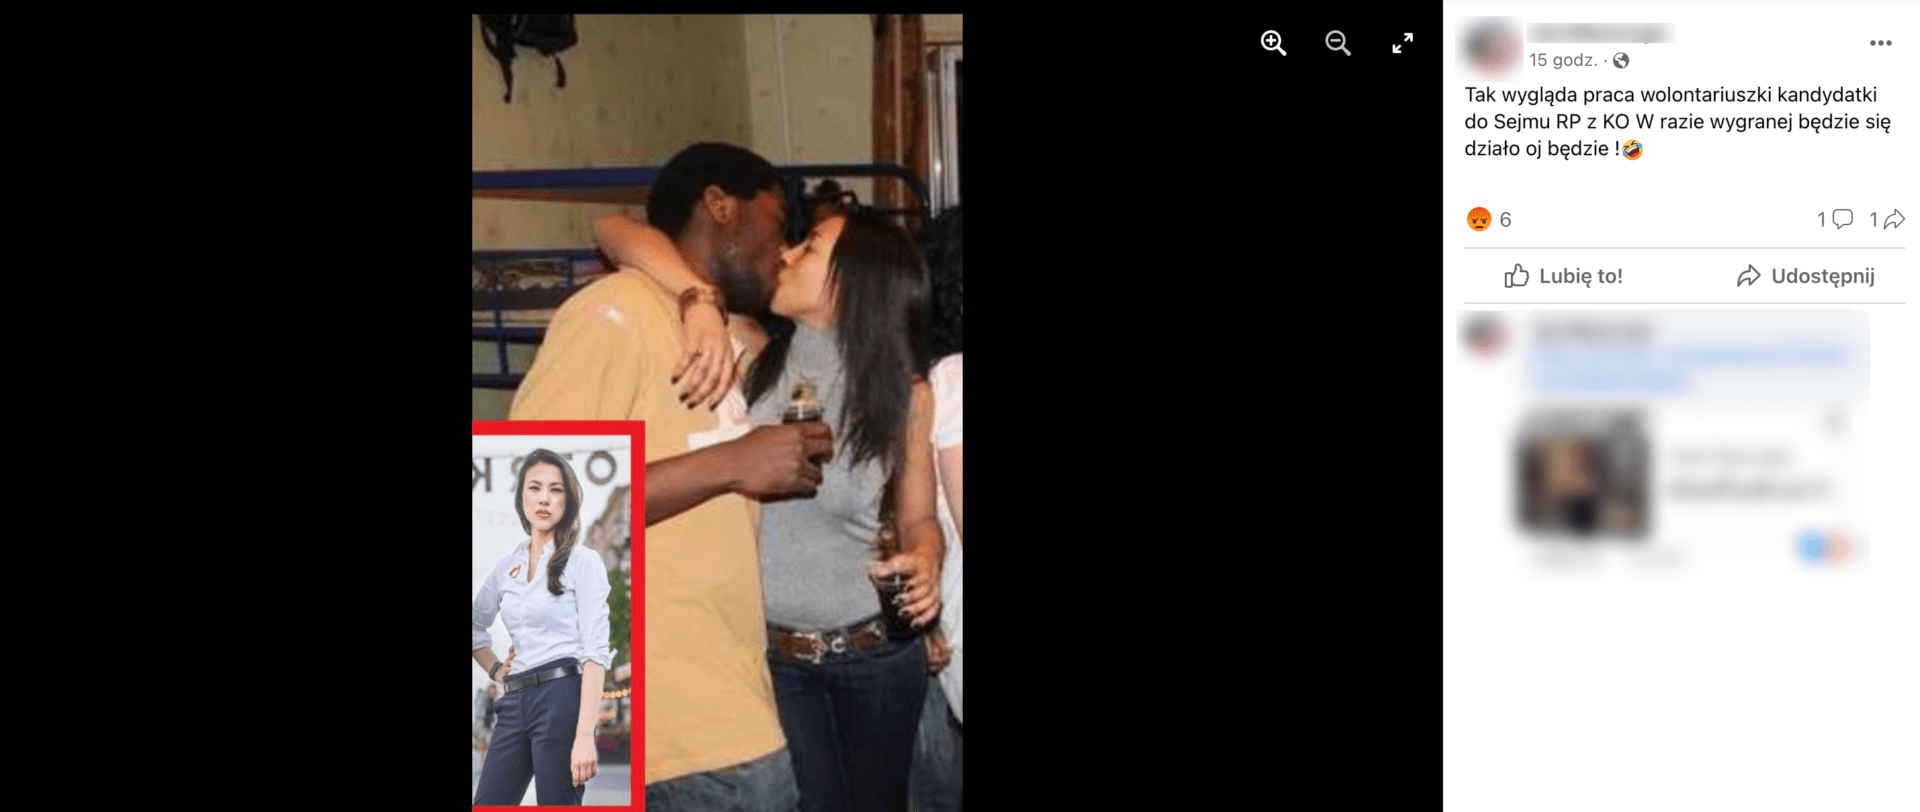 Zrzut ekranu jednego z omawianych postów. Widoczne jest zdjęcie całującej się pary oraz w rogu fotografia Aleksandry Wiśniewskiej.